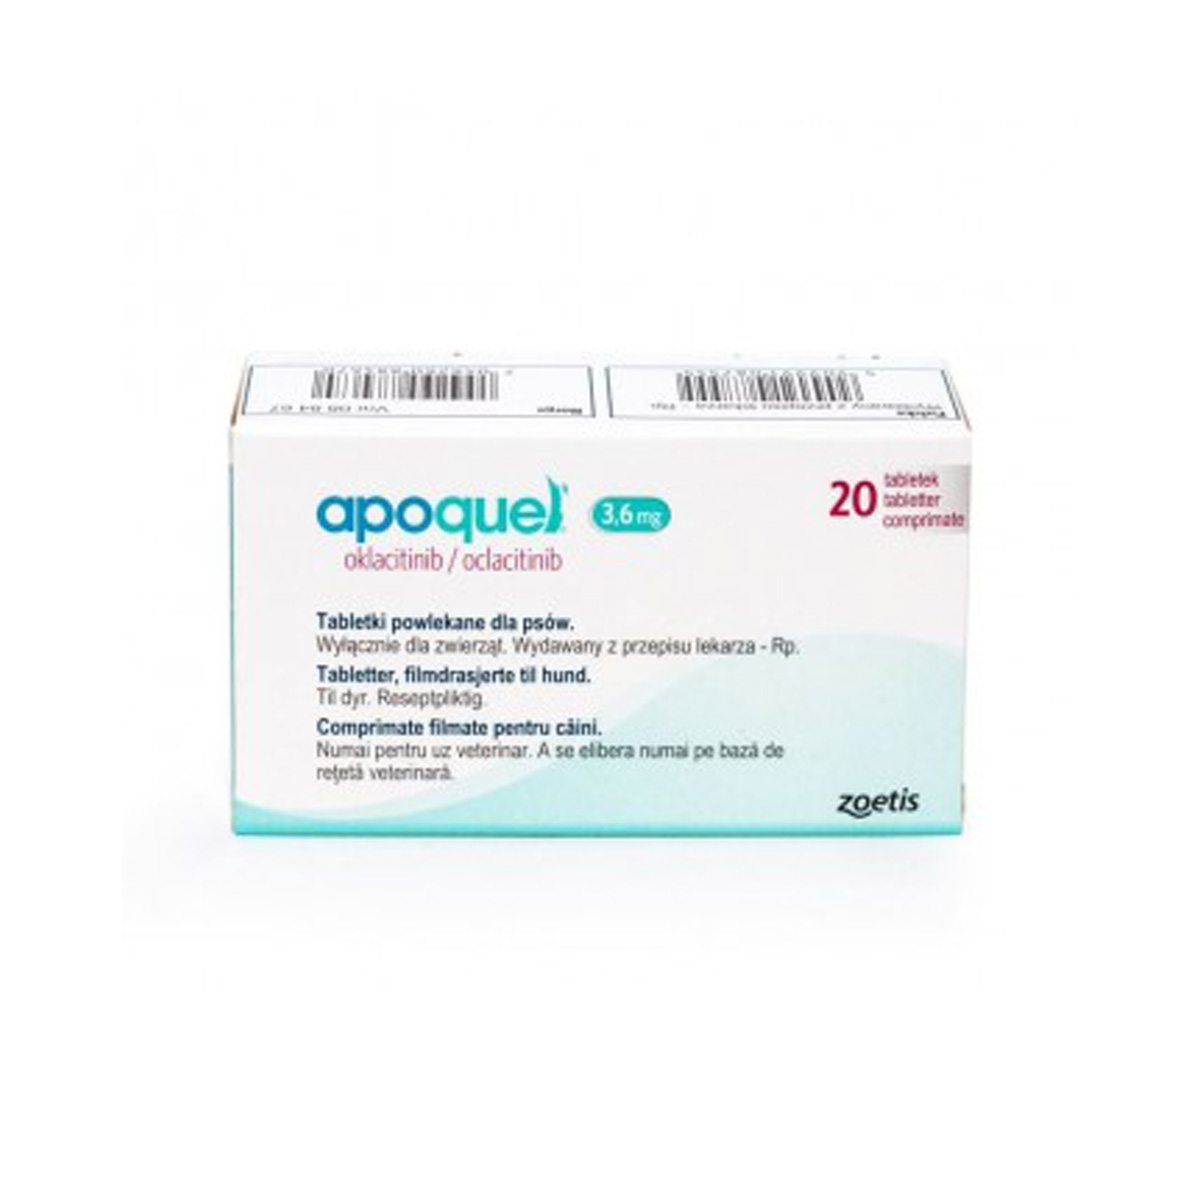 Apoquel 5.4 mg pentru caini 20 tablete thepetclub.ro/